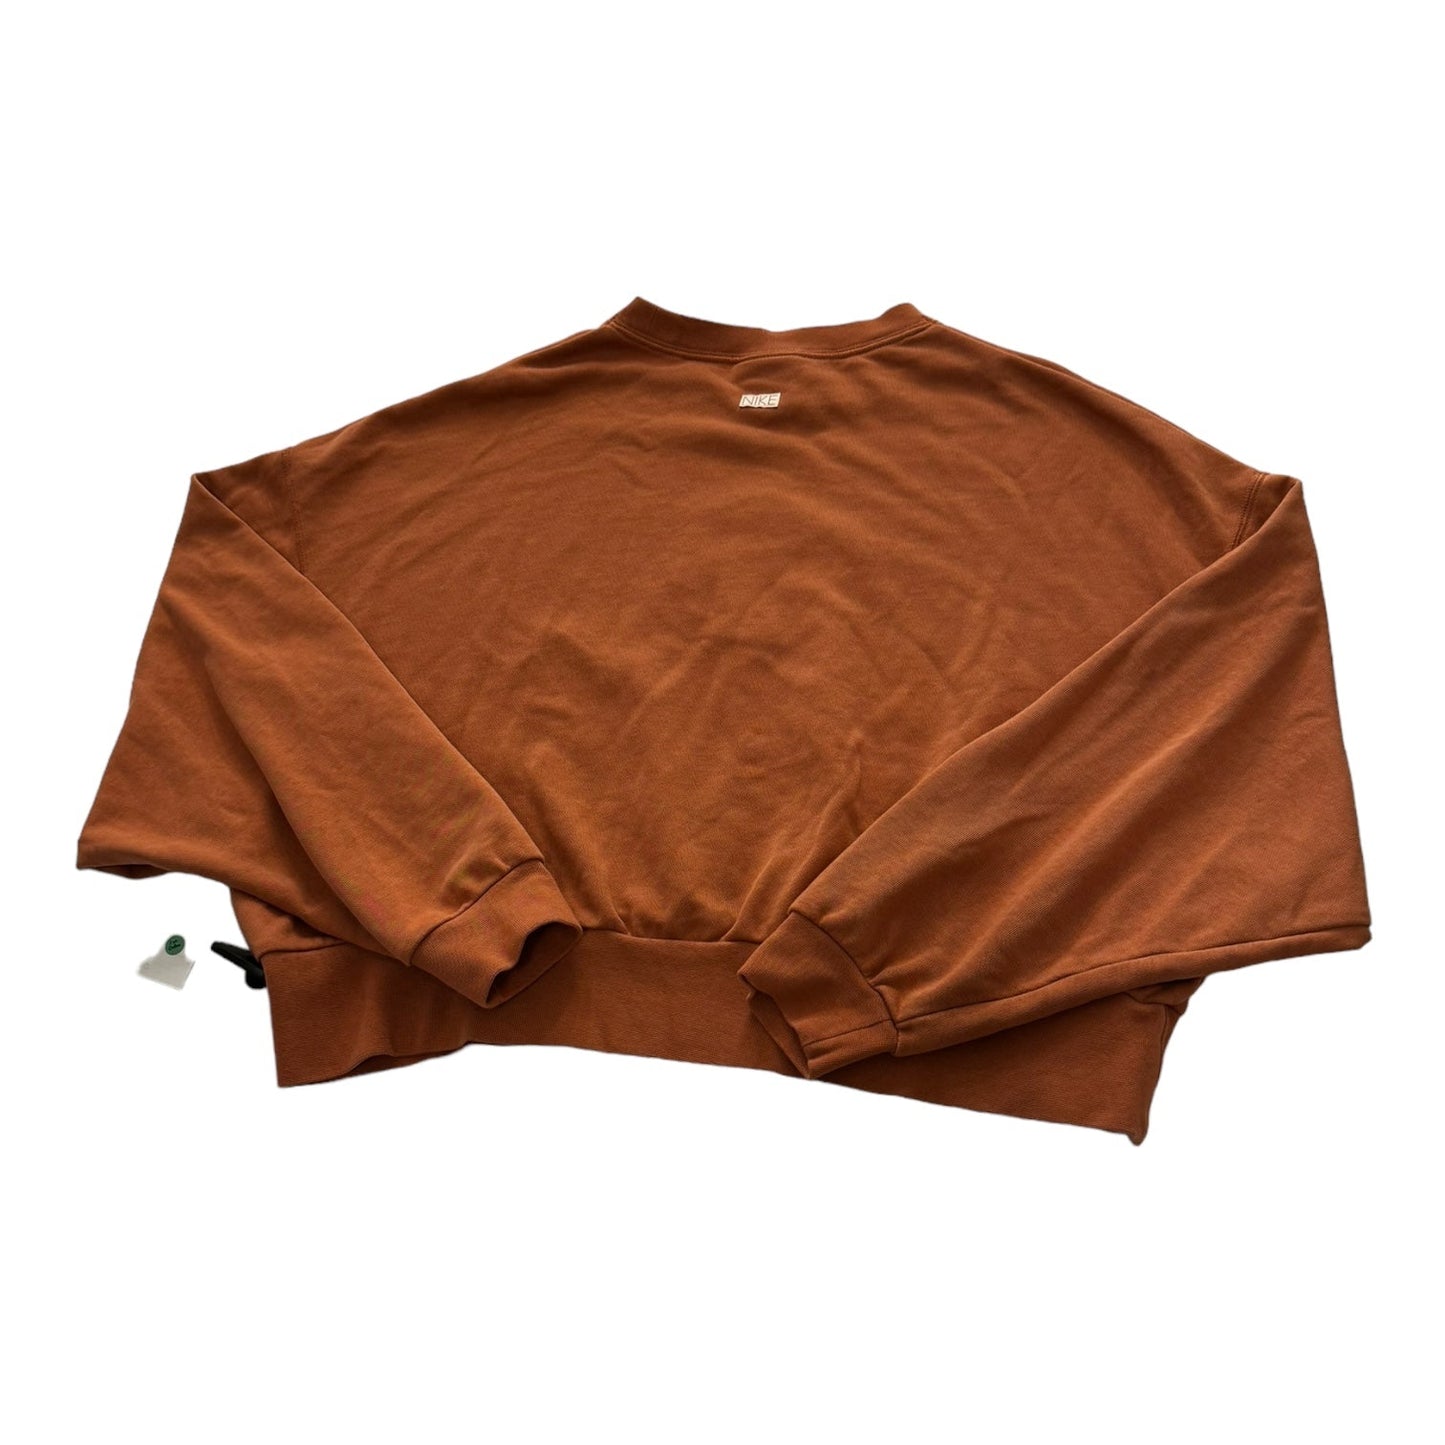 Orange Athletic Sweatshirt Crewneck Nike, Size S